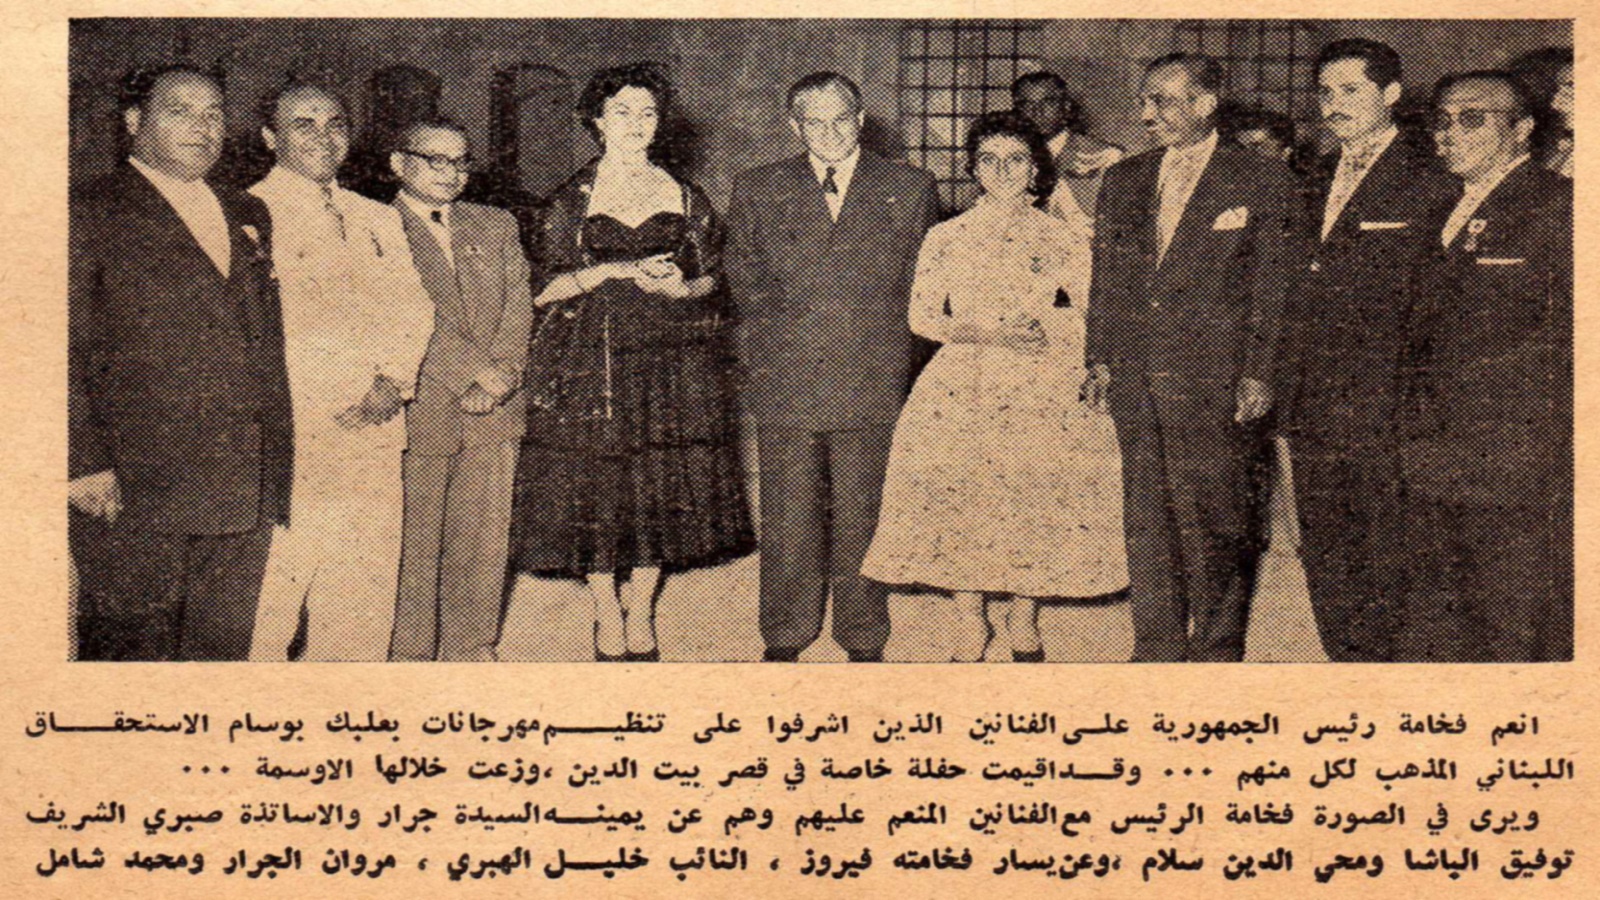 تكريم فريق "الليالي اللبنانية" الأولى في قصر بيت الدين، 1957.